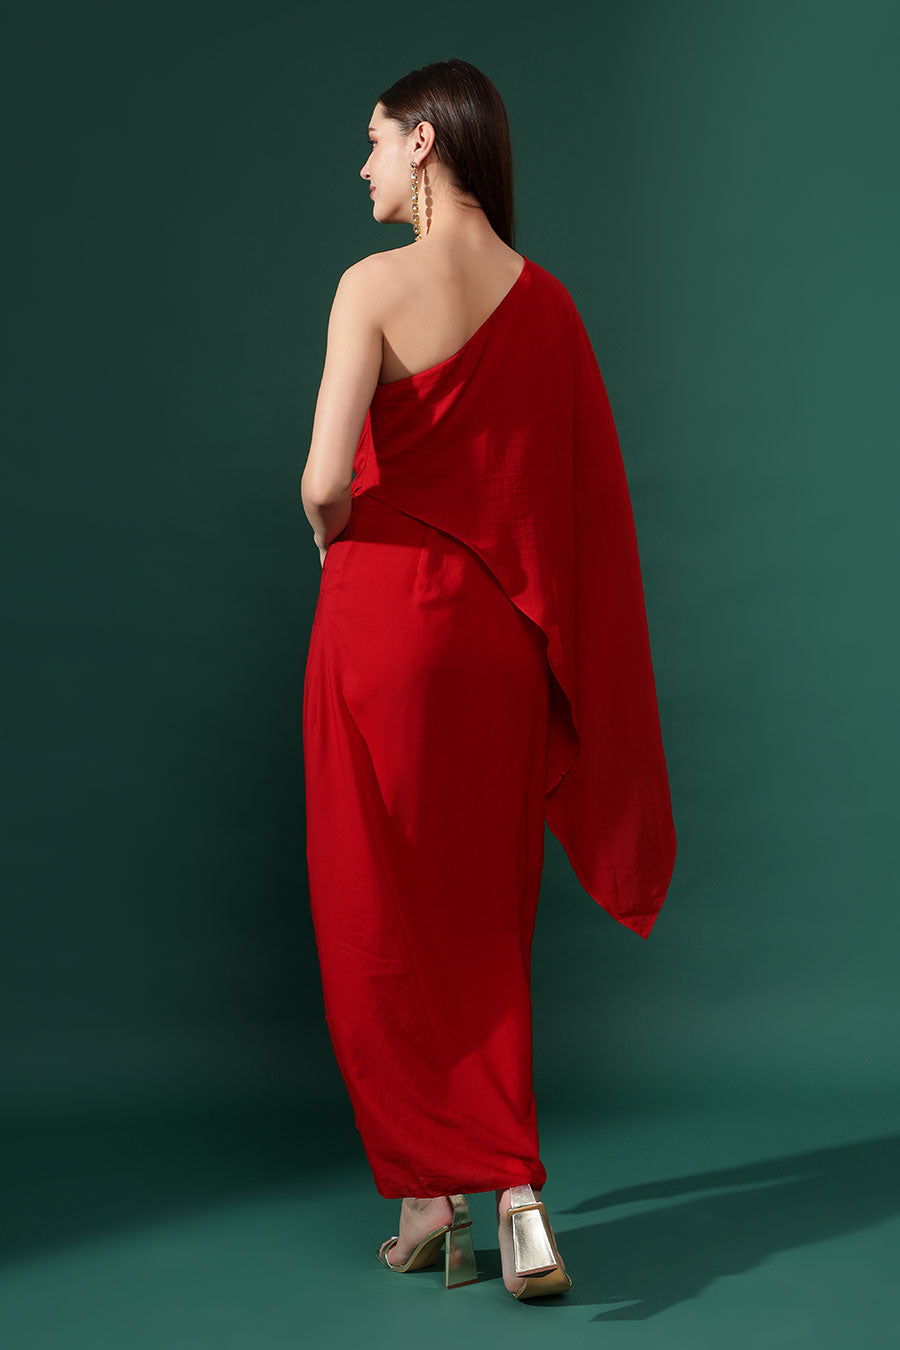 Red One-Shoulder Drape Dress